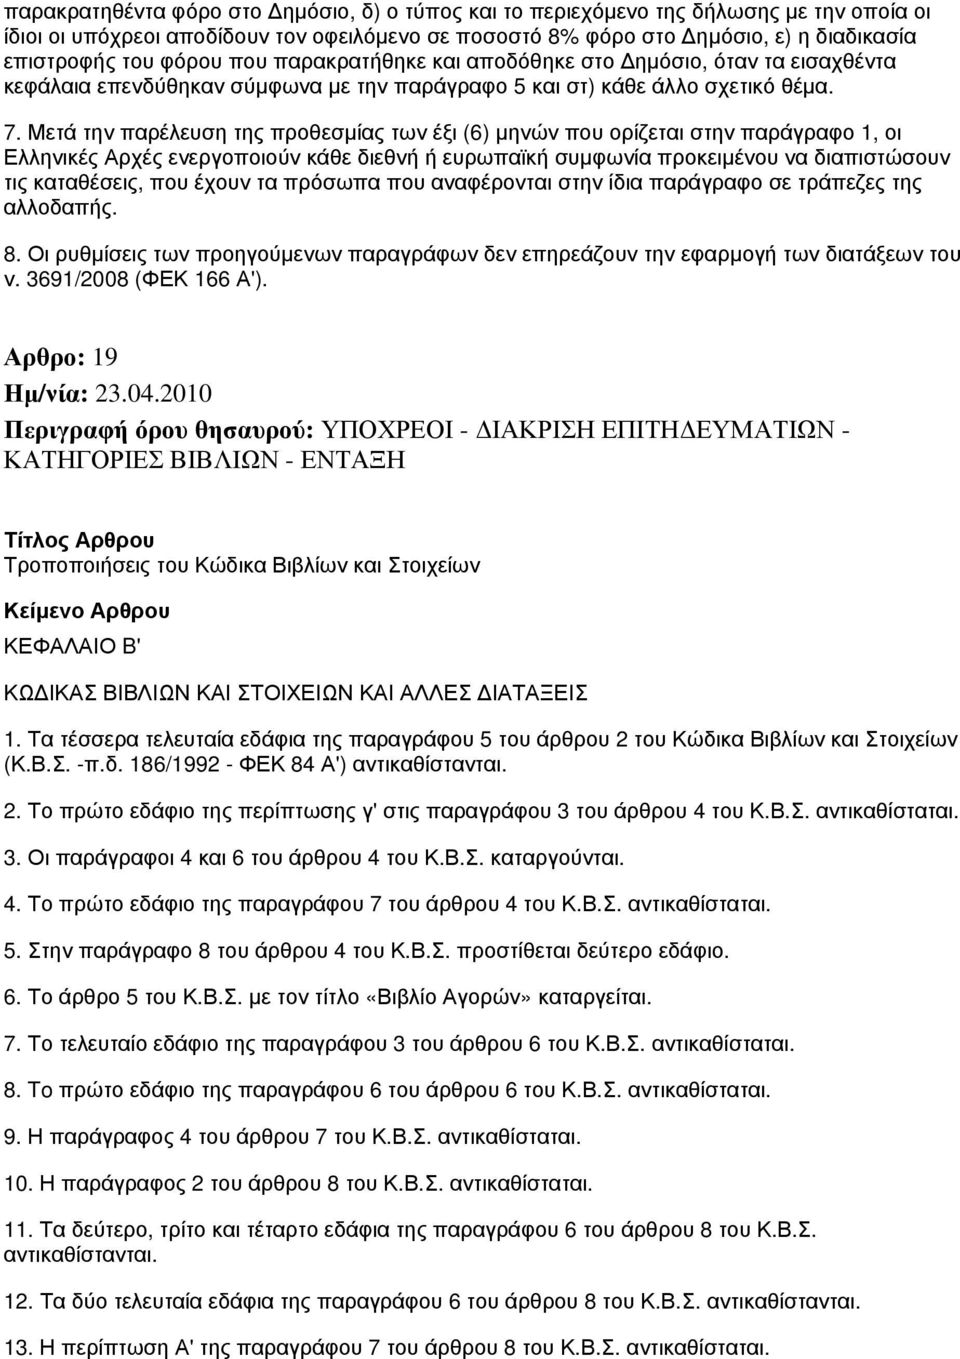 Μετά την παρέλευση της προθεσμίας των έξι (6) μηνών που ορίζεται στην παράγραφο 1, οι Ελληνικές Αρχές ενεργοποιούν κάθε διεθνή ή ευρωπαϊκή συμφωνία προκειμένου να διαπιστώσουν τις καταθέσεις, που